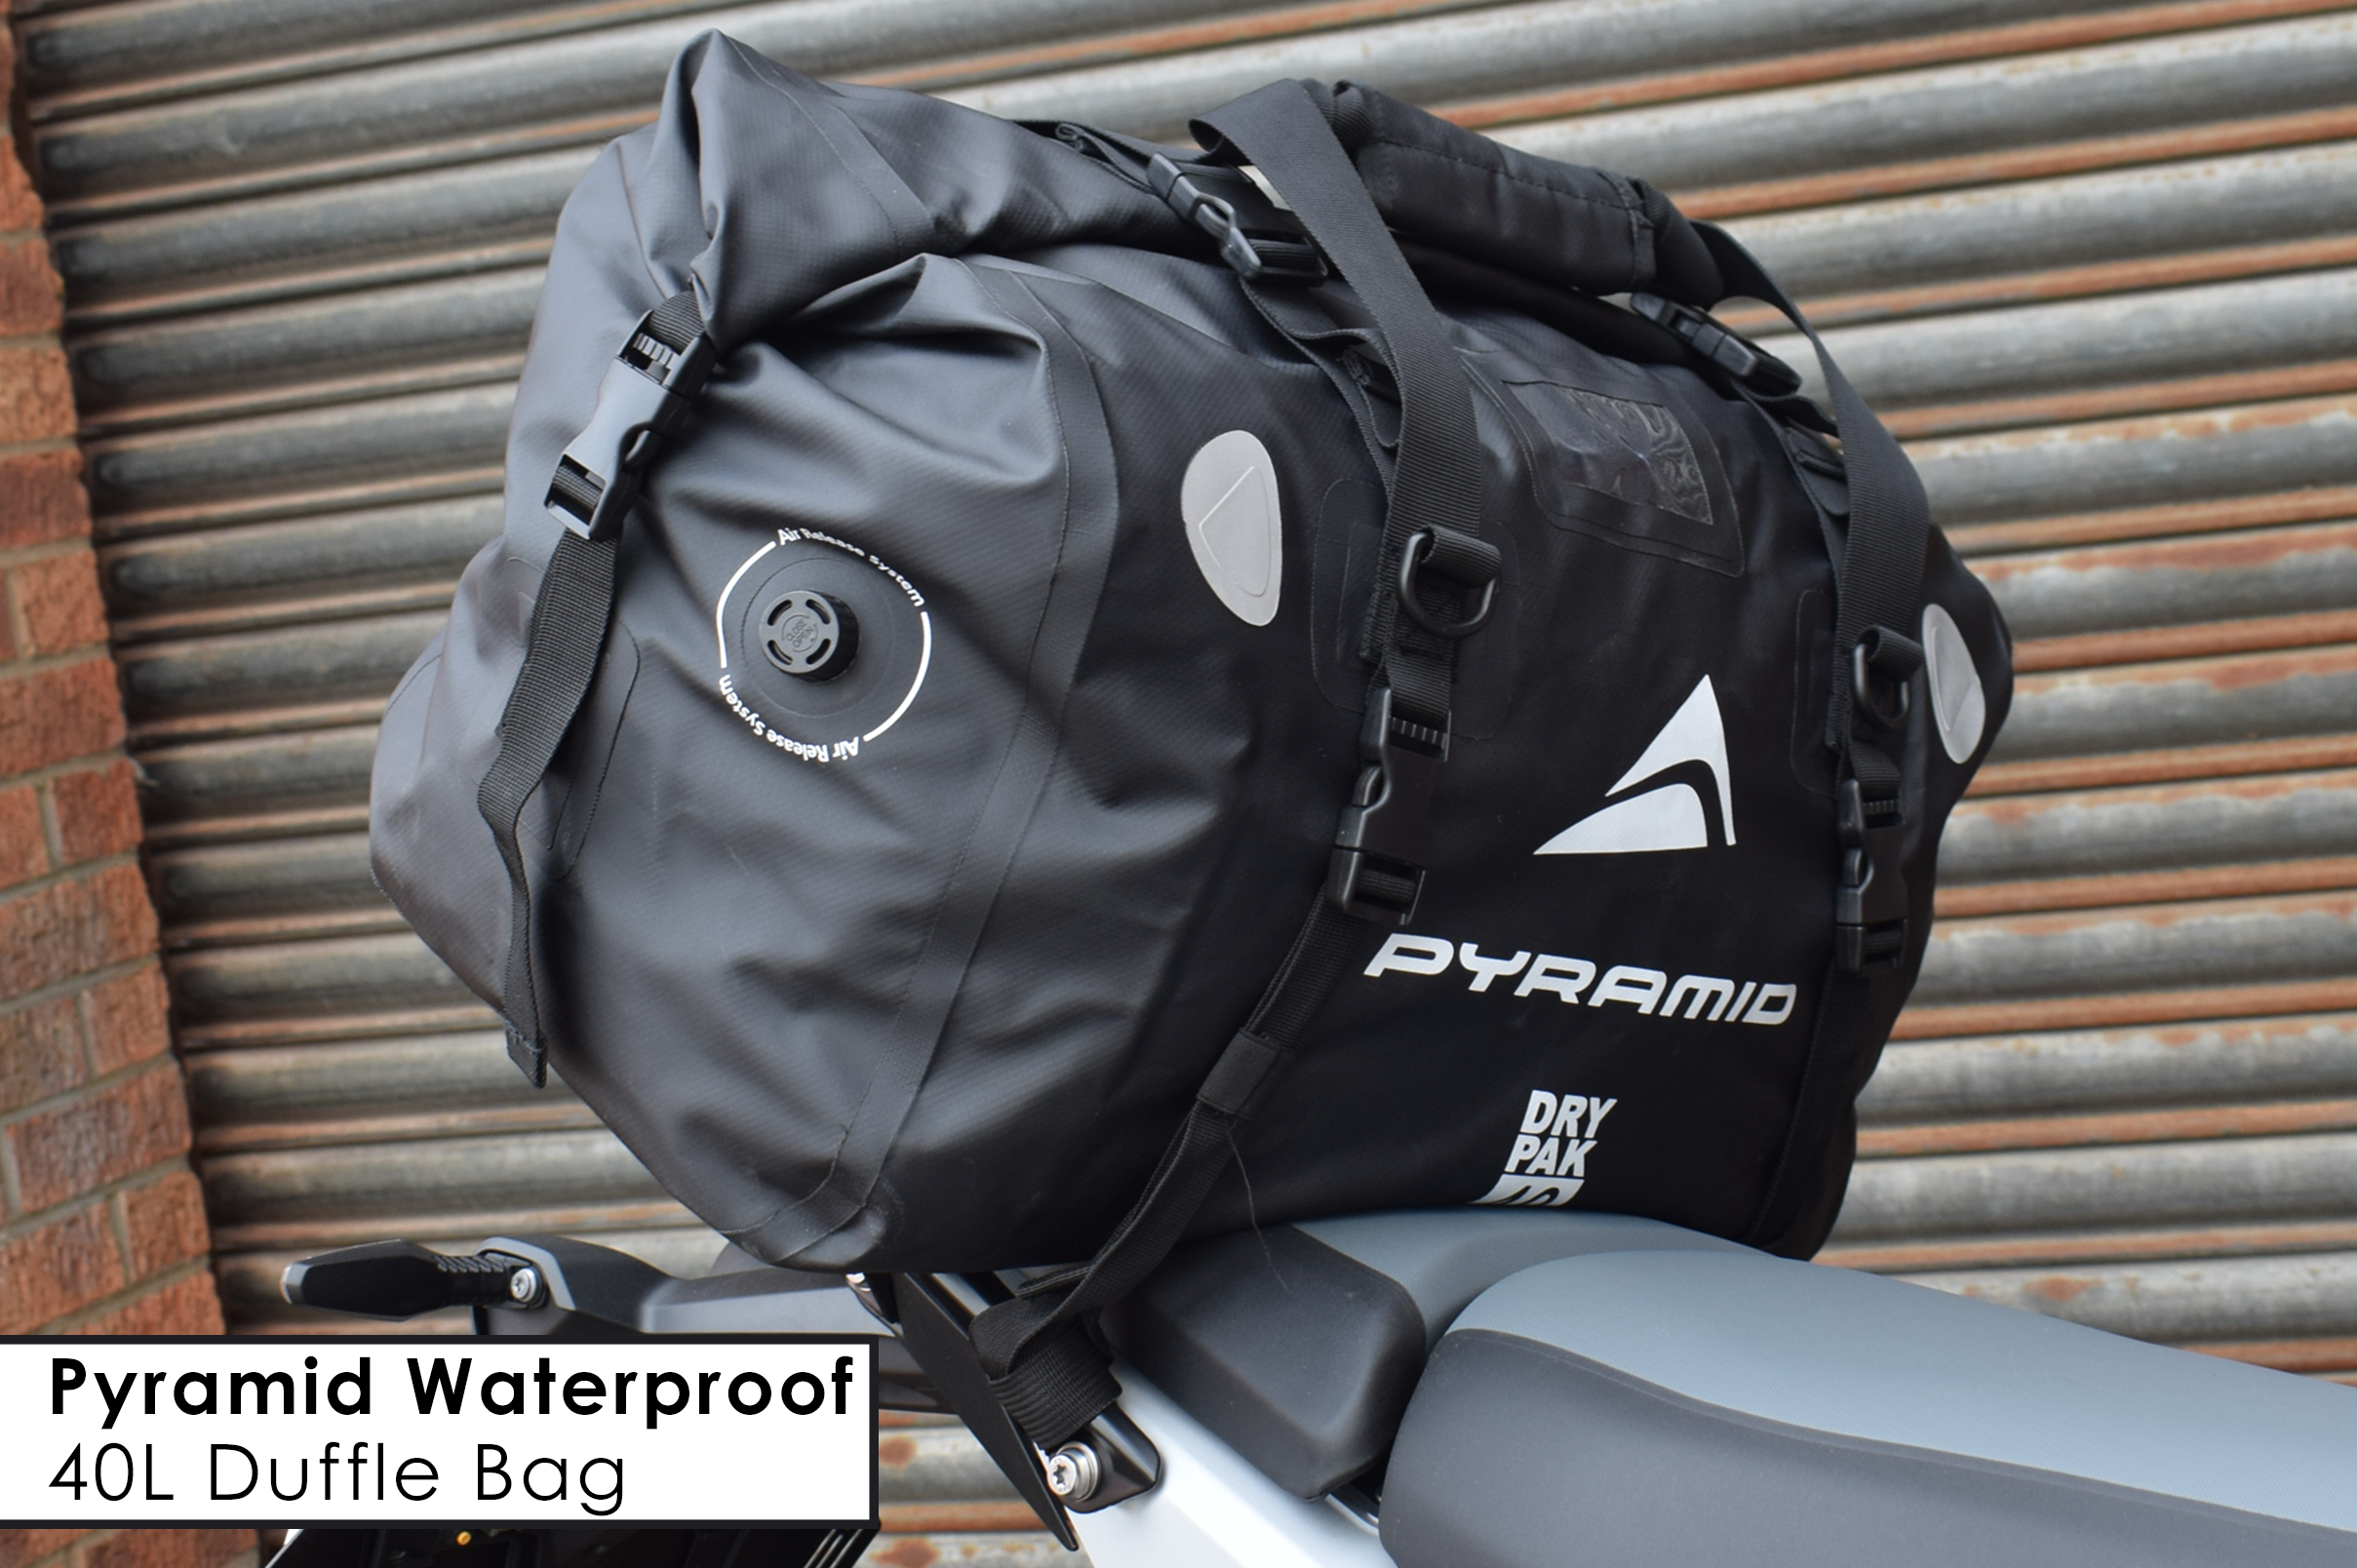 Pyramid Waterproof 40L Duffle Bag!